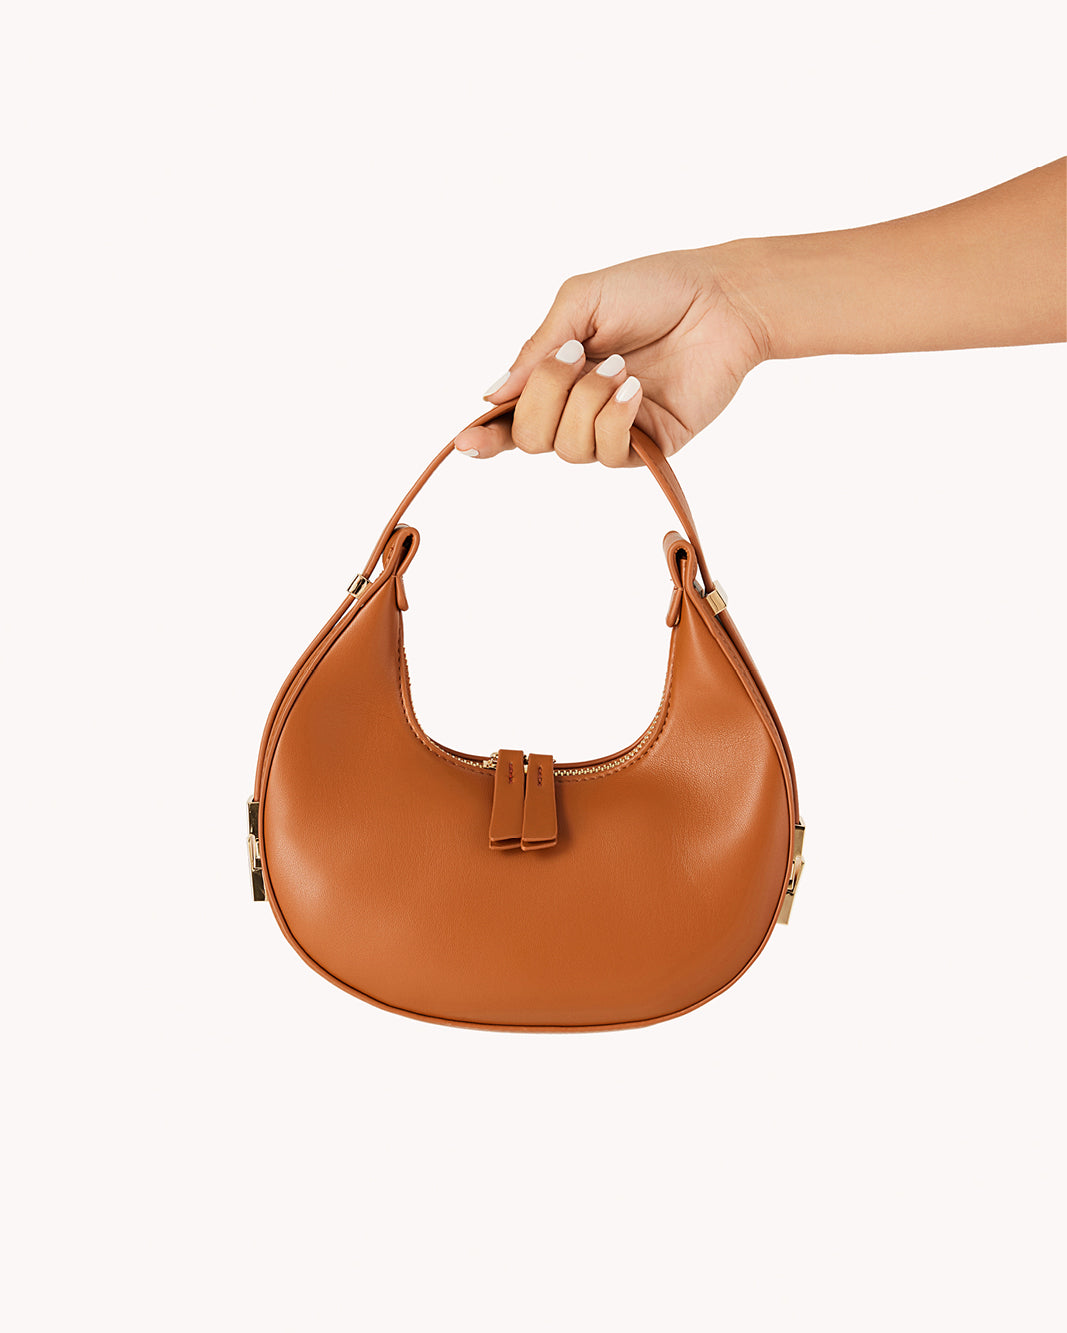 SOFIA SHOULDER BAG - TAN-Handbags-Billini-O/S-Billini